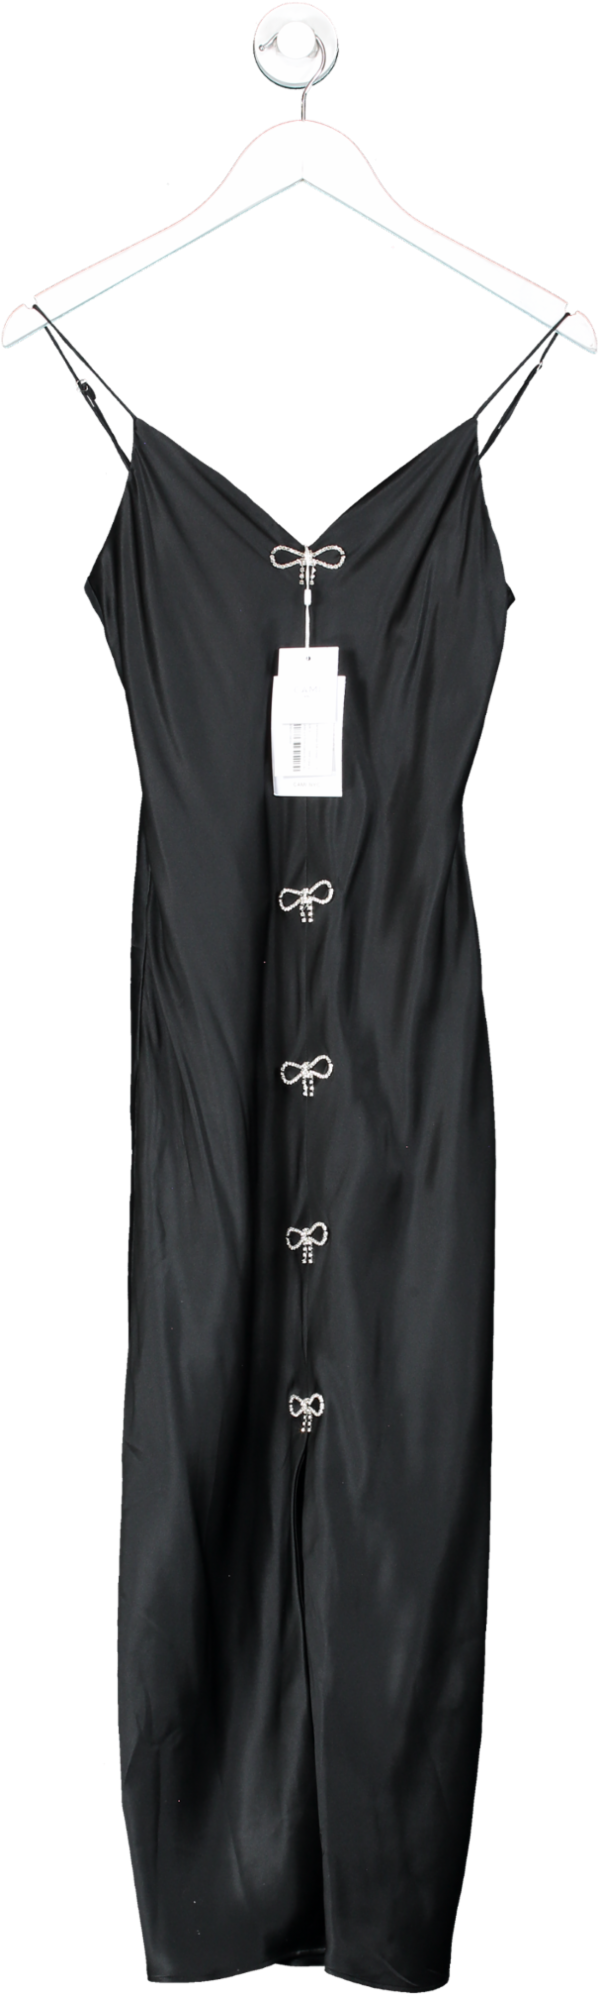 CAMI NYC Black Cerula Crystal bows embellished Silk Dress UK S